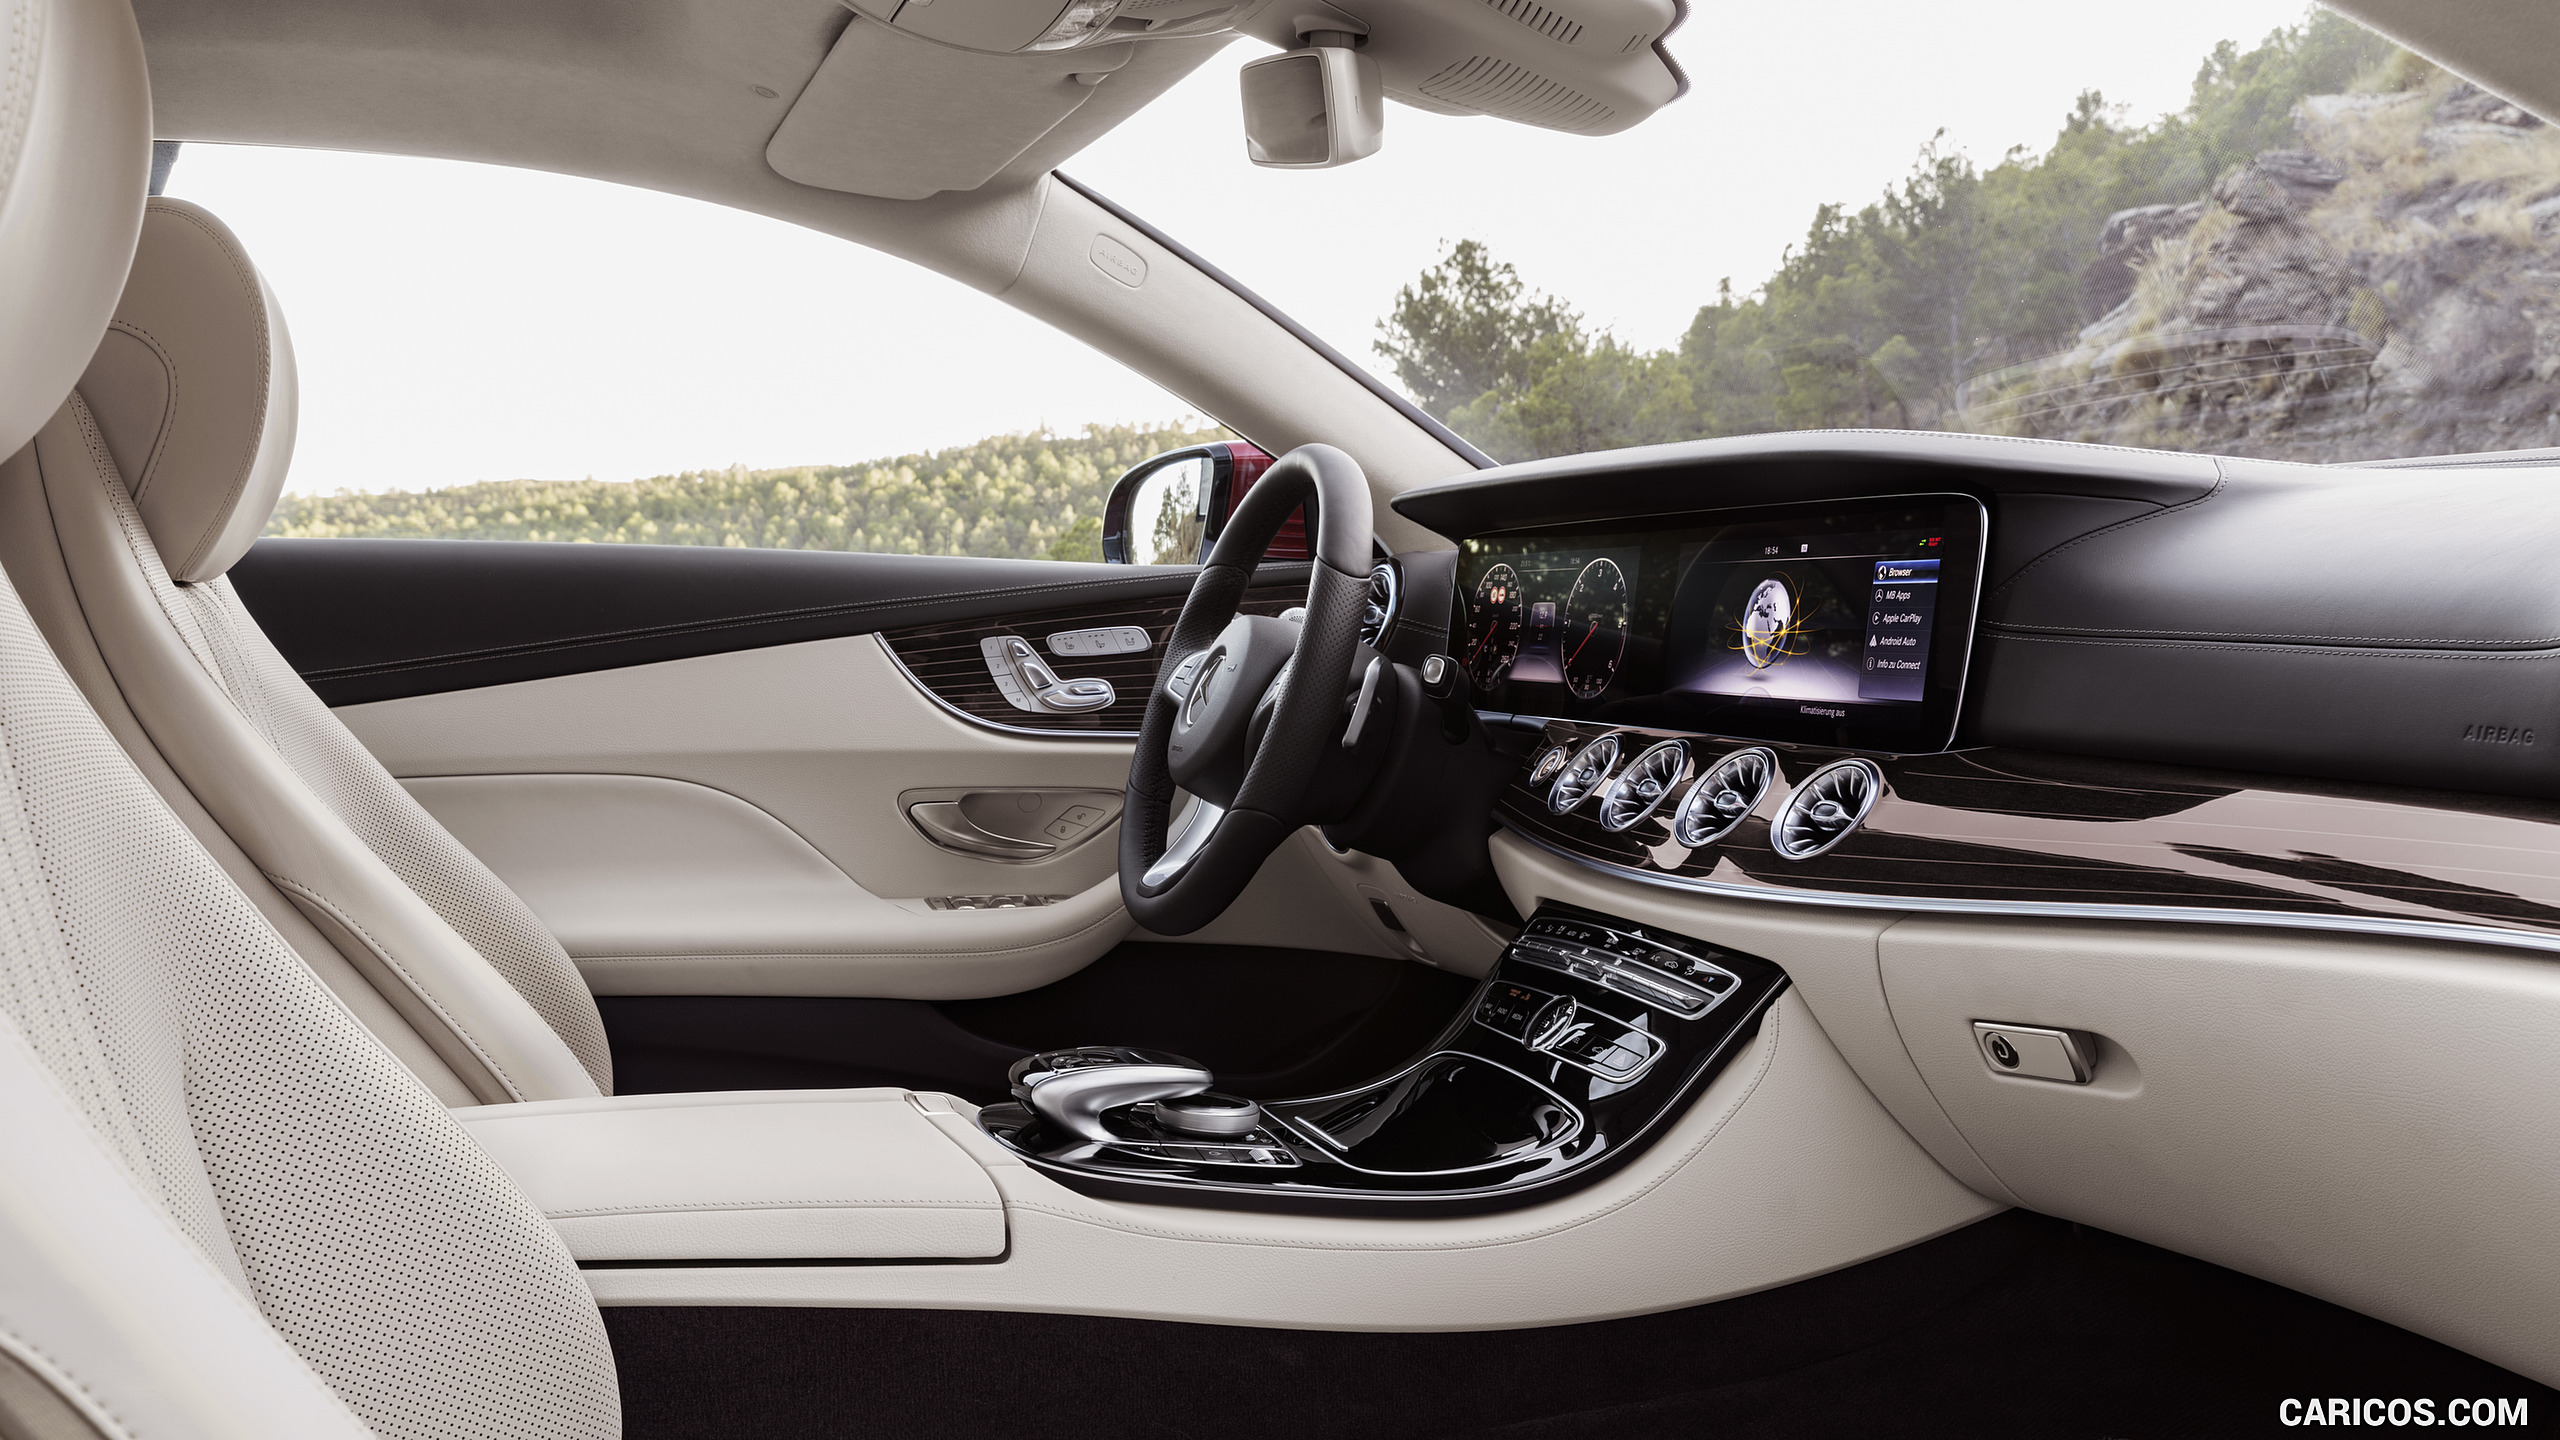 2018 Mercedes-Benz E-Class Coupe - Macchiato Beige / Espresso Brown Leather Interior, Seats, #13 of 365